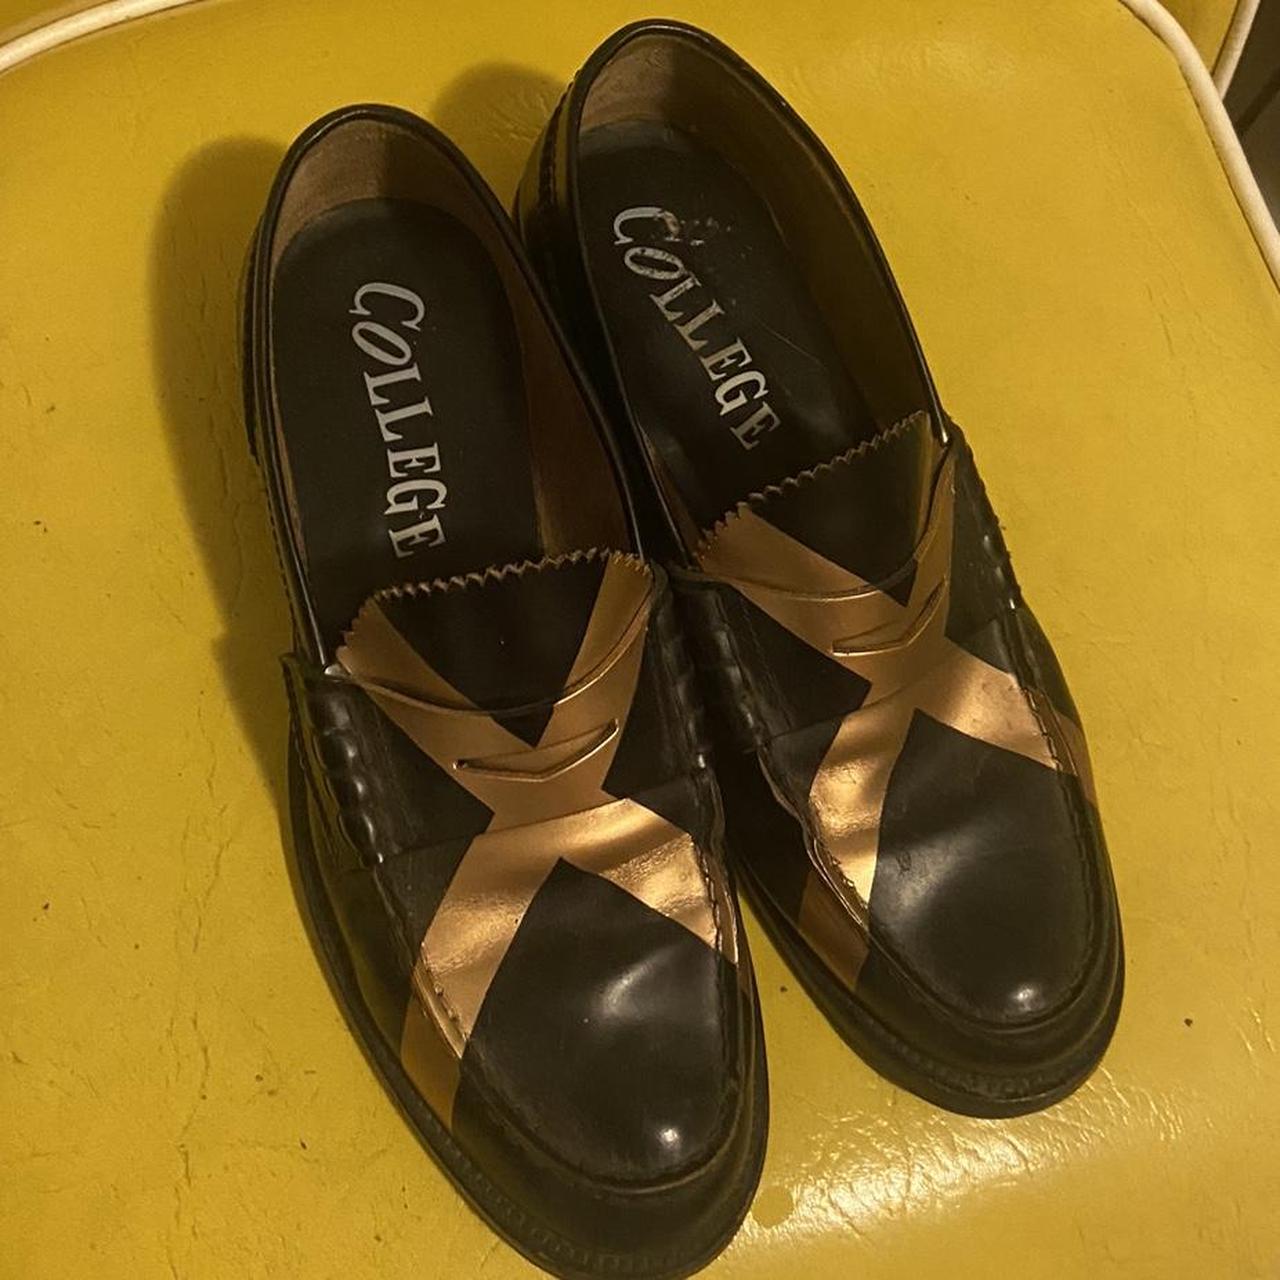 Dries Van Noten Women's Black and Gold Loafers